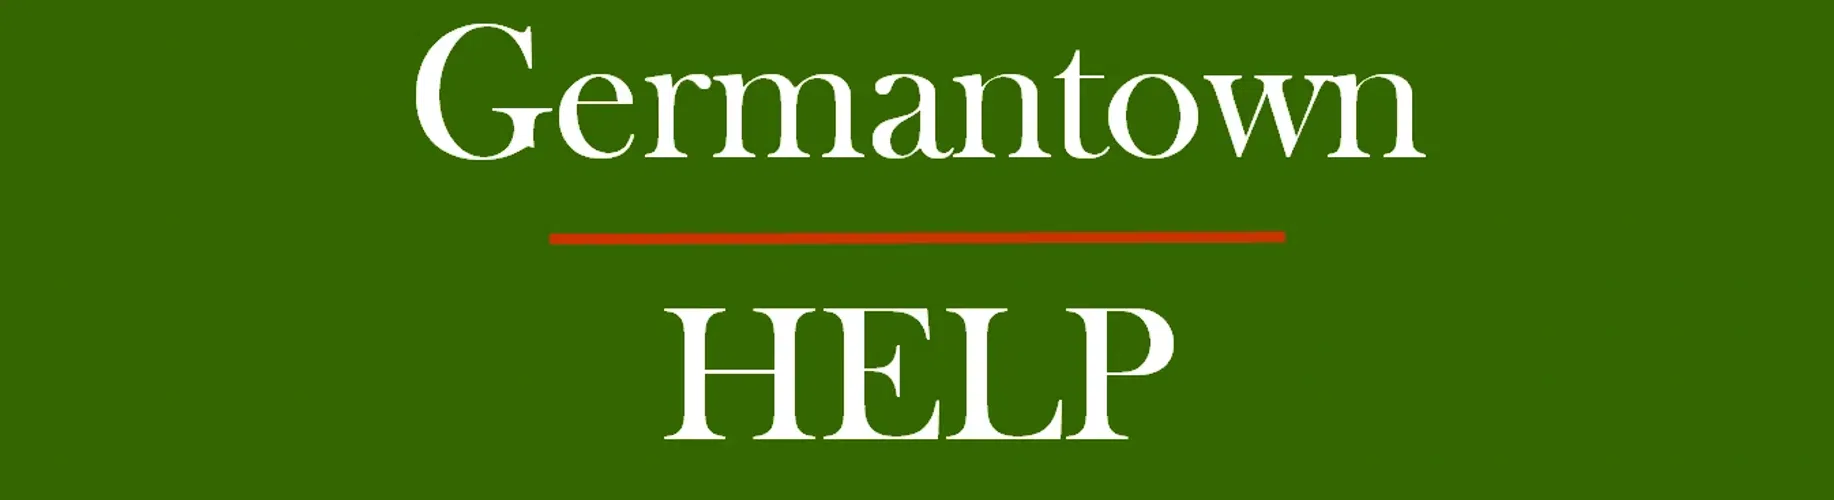 Germantown HELP, Inc.